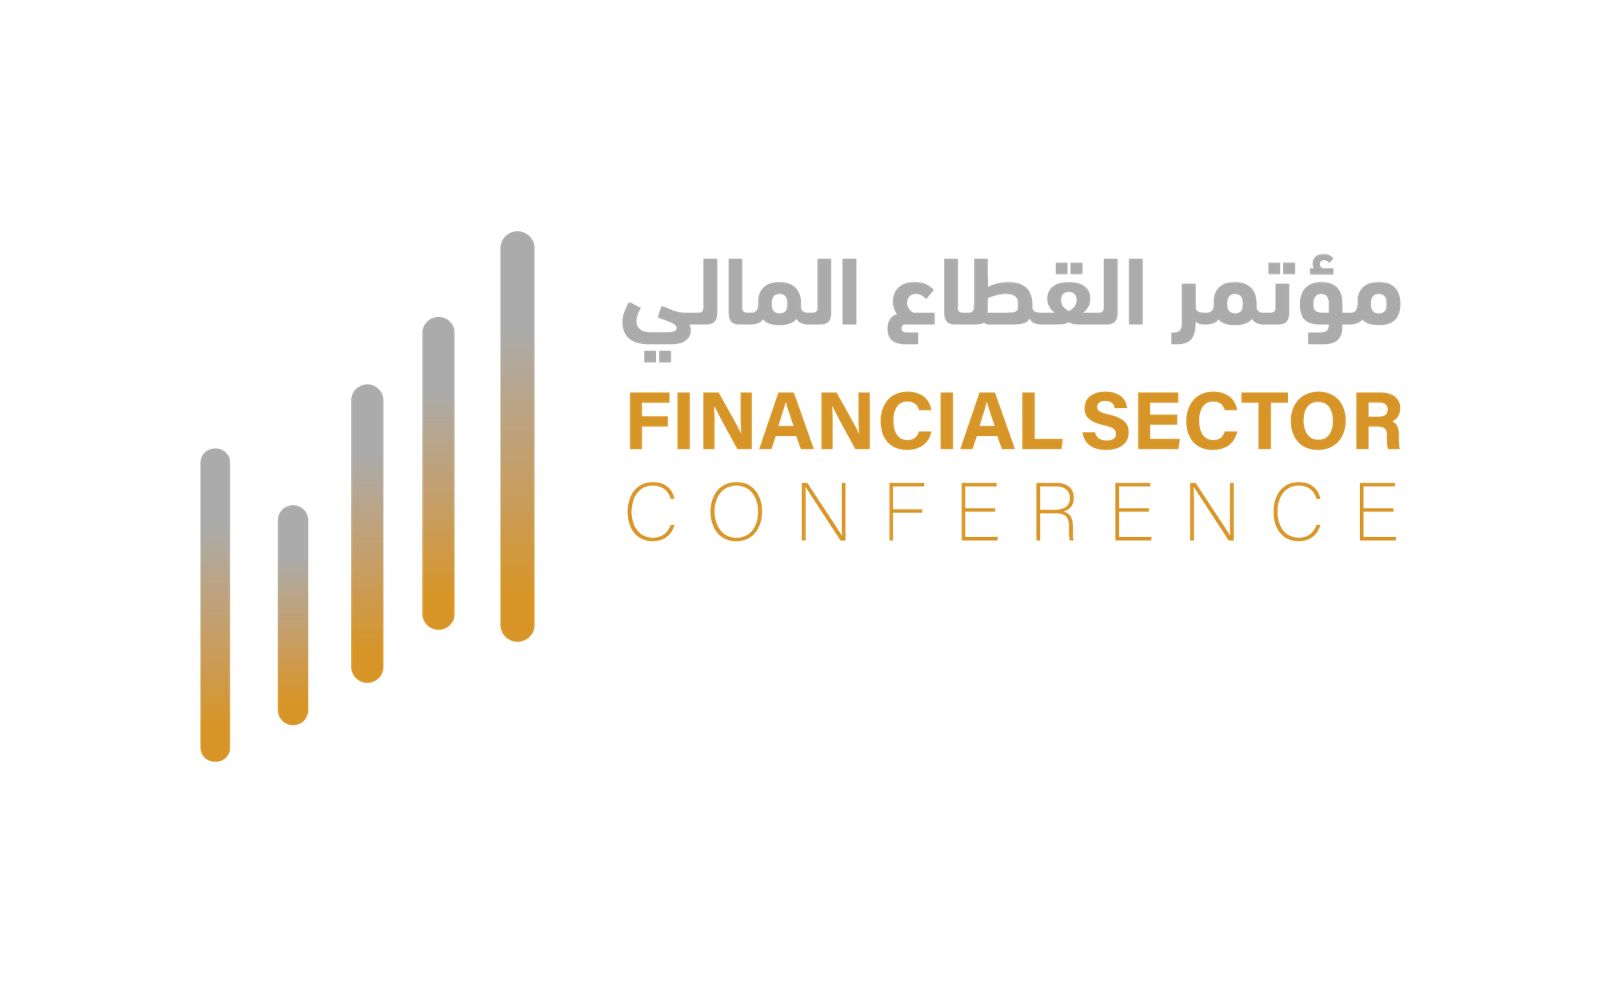 لقاء إعلامي يكشف عن مواضيع وفعاليات مؤتمر القطاع المالي في نسخته الثانية